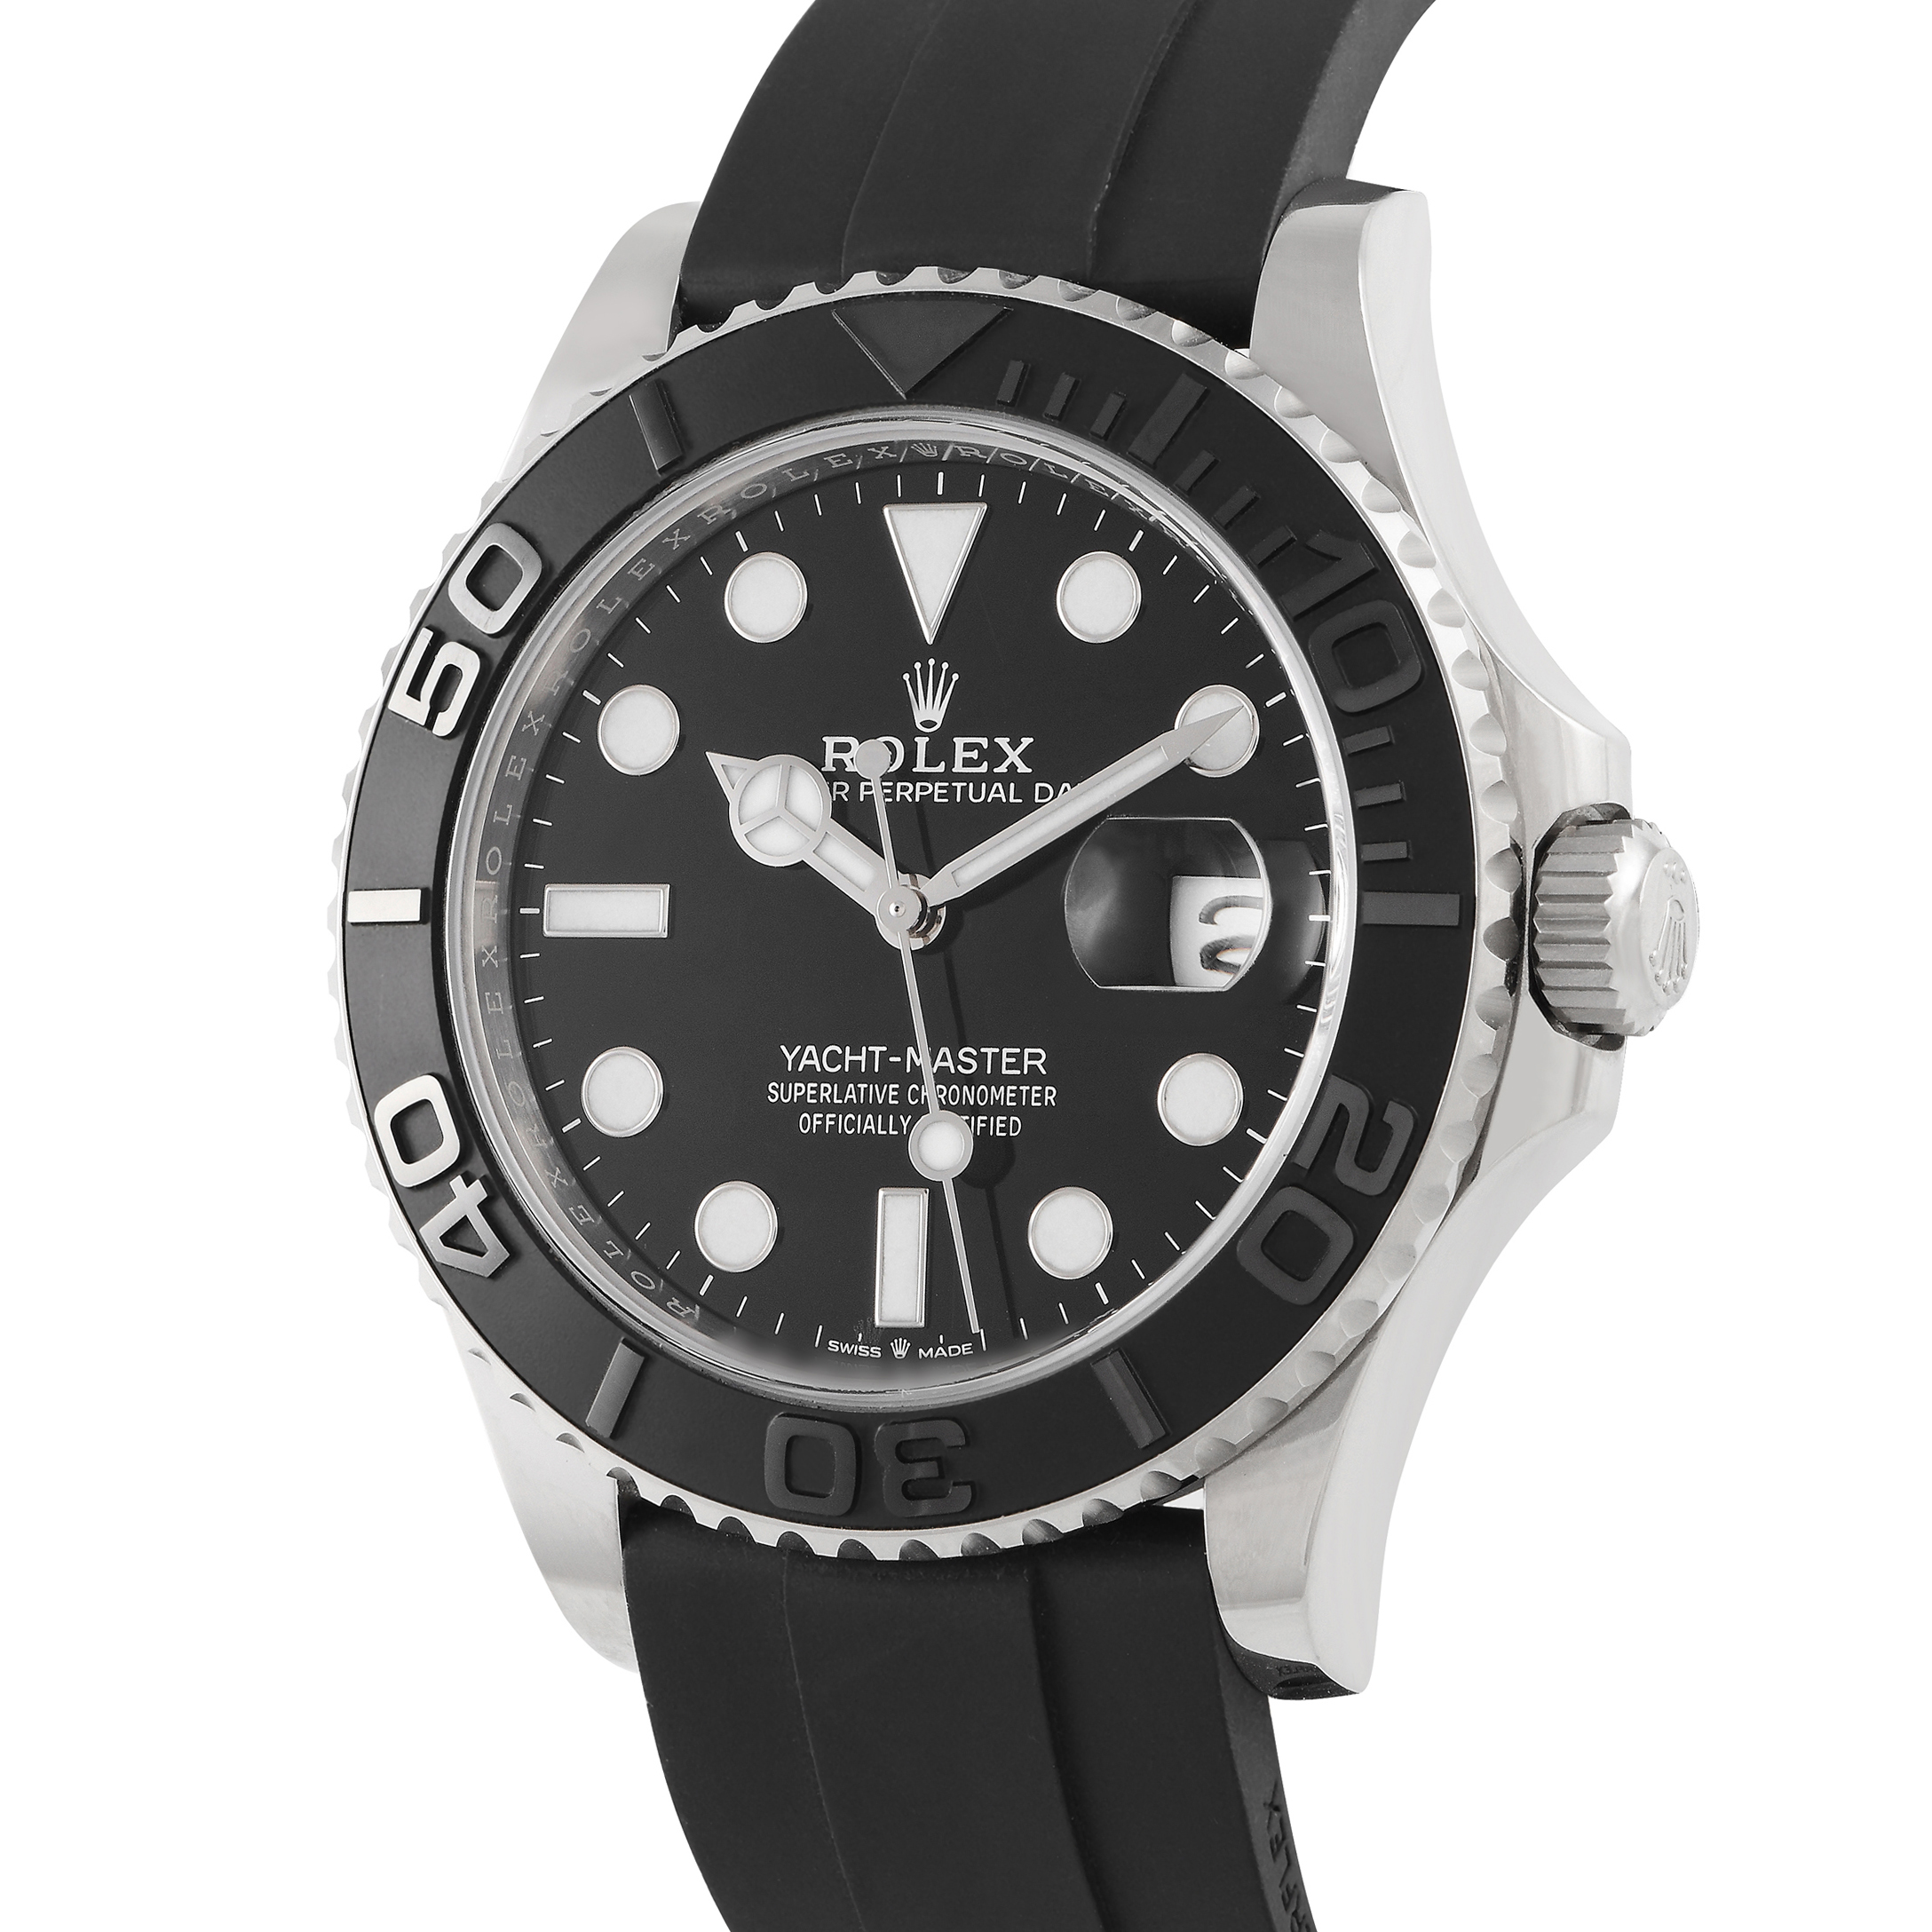 Rolex Yacht-Master 42 Watch 226659